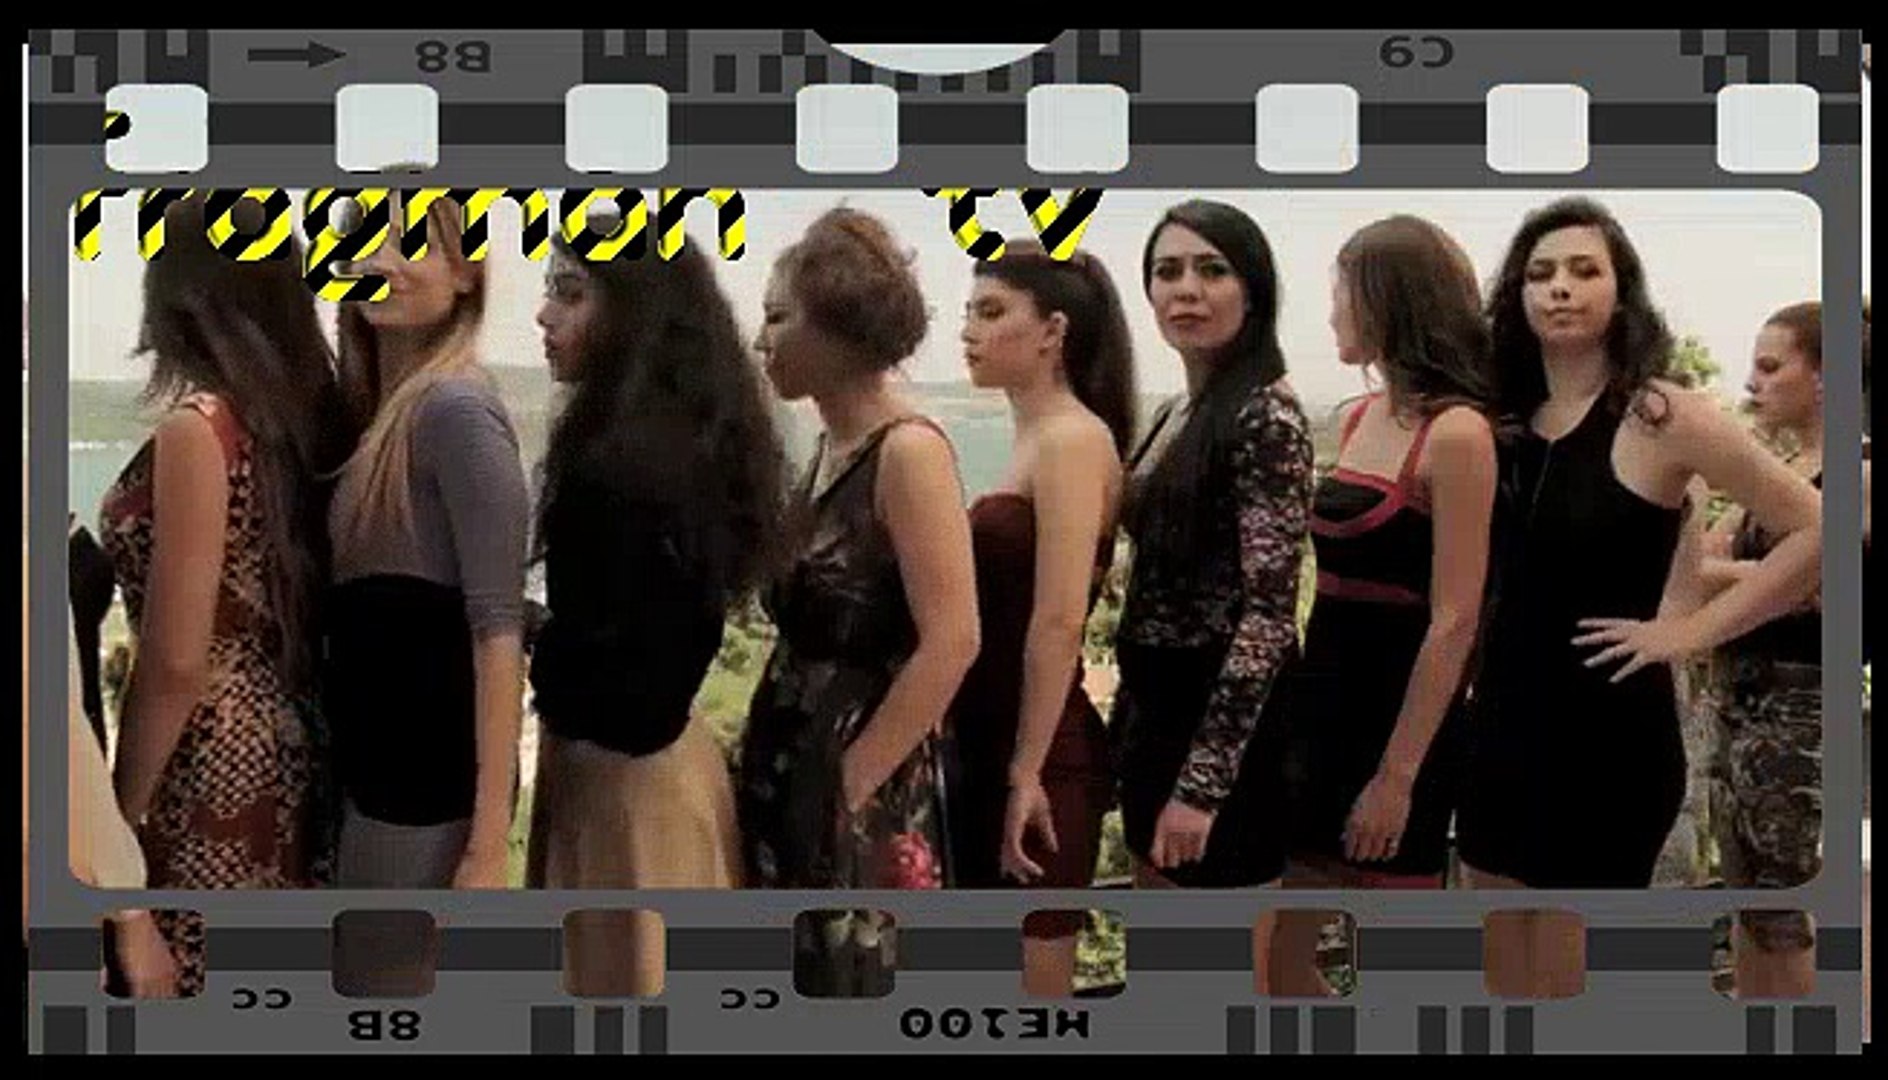 Dar Elbise Film Fragmanı Full İzle 2016 - Dailymotion Video